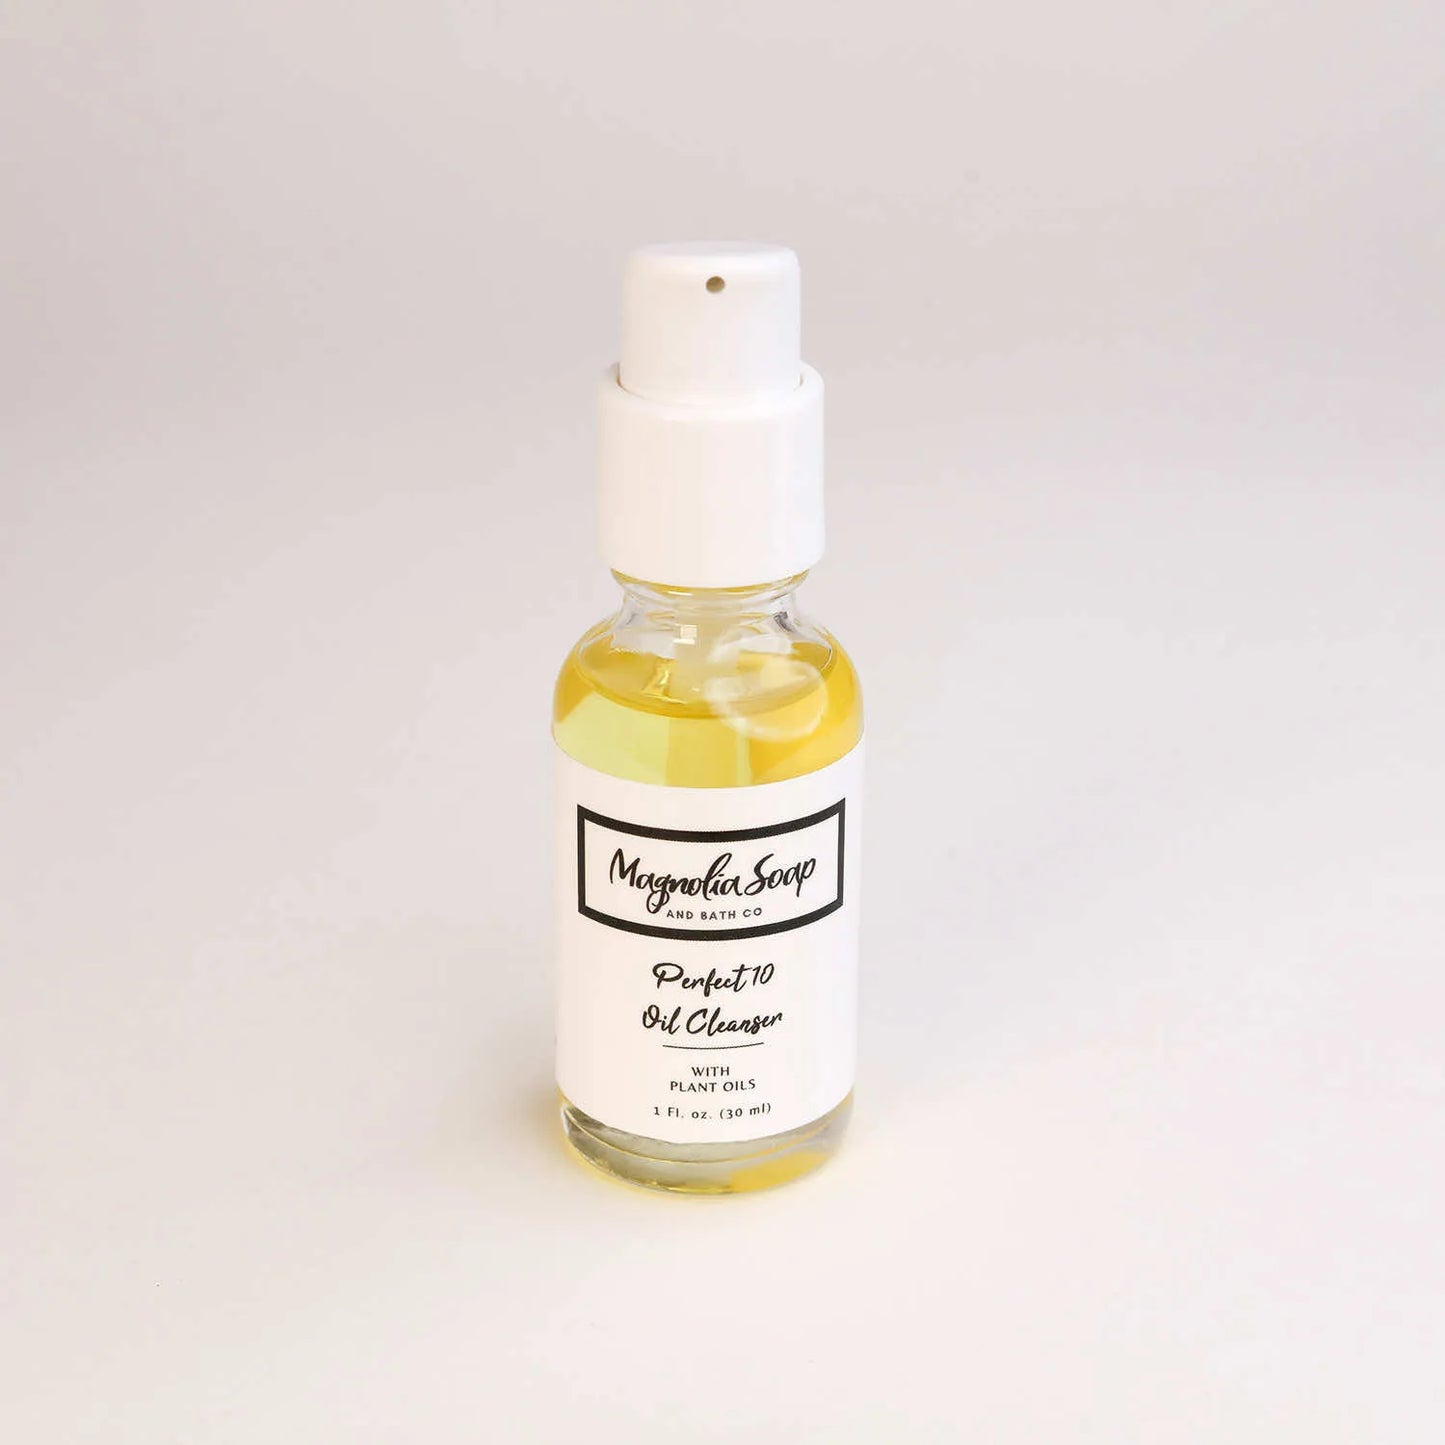 Magnolia Soap & Bath - Perfect 10 Oil Cleanser